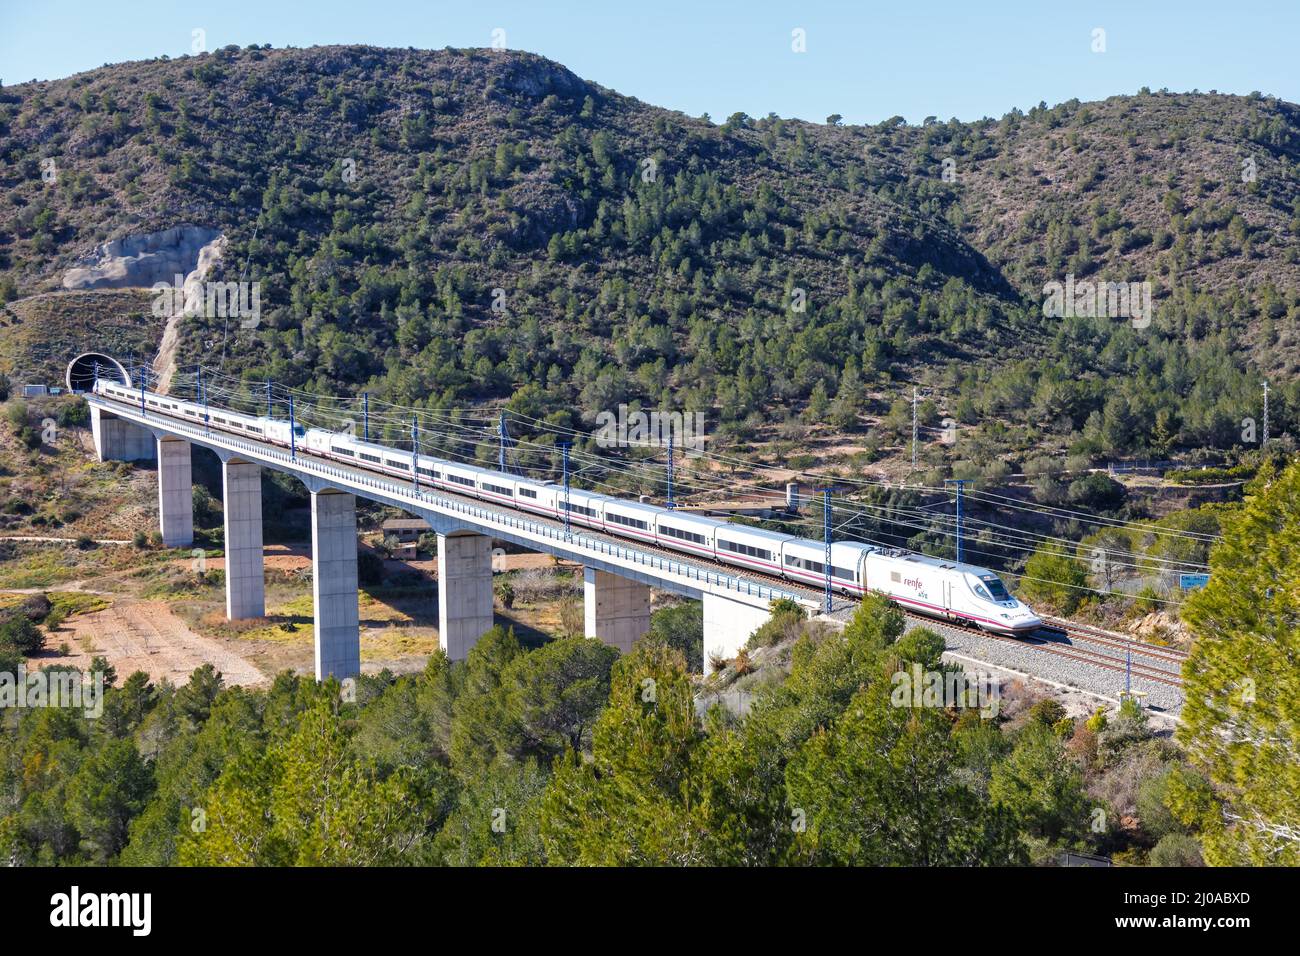 Roda de Bera, Spagna - 20 febbraio 2022: Treno ad alta velocità Tango 350 della RENFE sulla linea ferroviaria ad alta velocità Madrid - Barcellona vicino a Roda de Bera Foto Stock